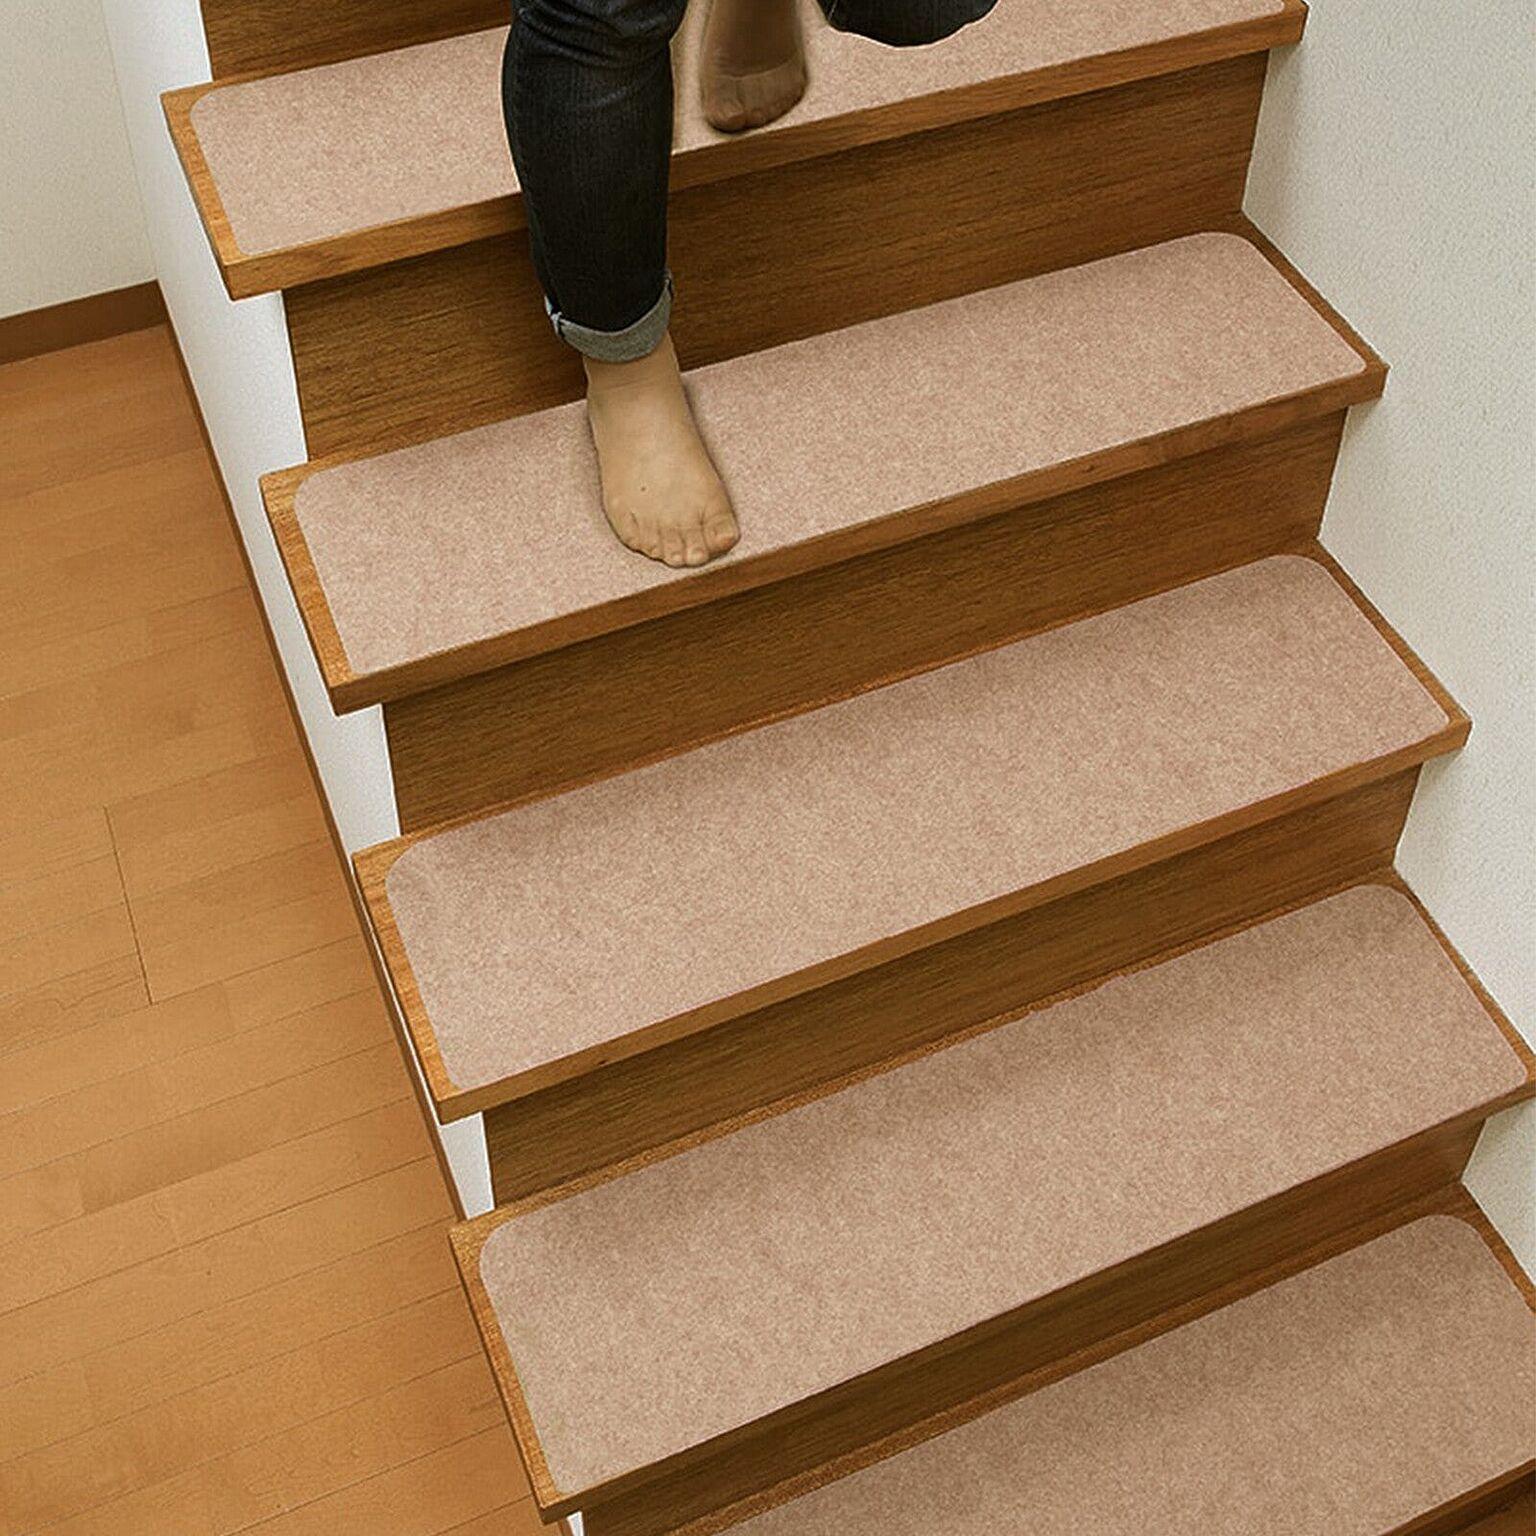 階段 吸着階段マット 約75×22cm 14枚セット (Y) 滑り止め マット 幅広タイプ ステップマット 階段敷き 洗える 置くだけ簡単 消臭 吸着 ペット シニア 負担軽減 引っ越し 新生活